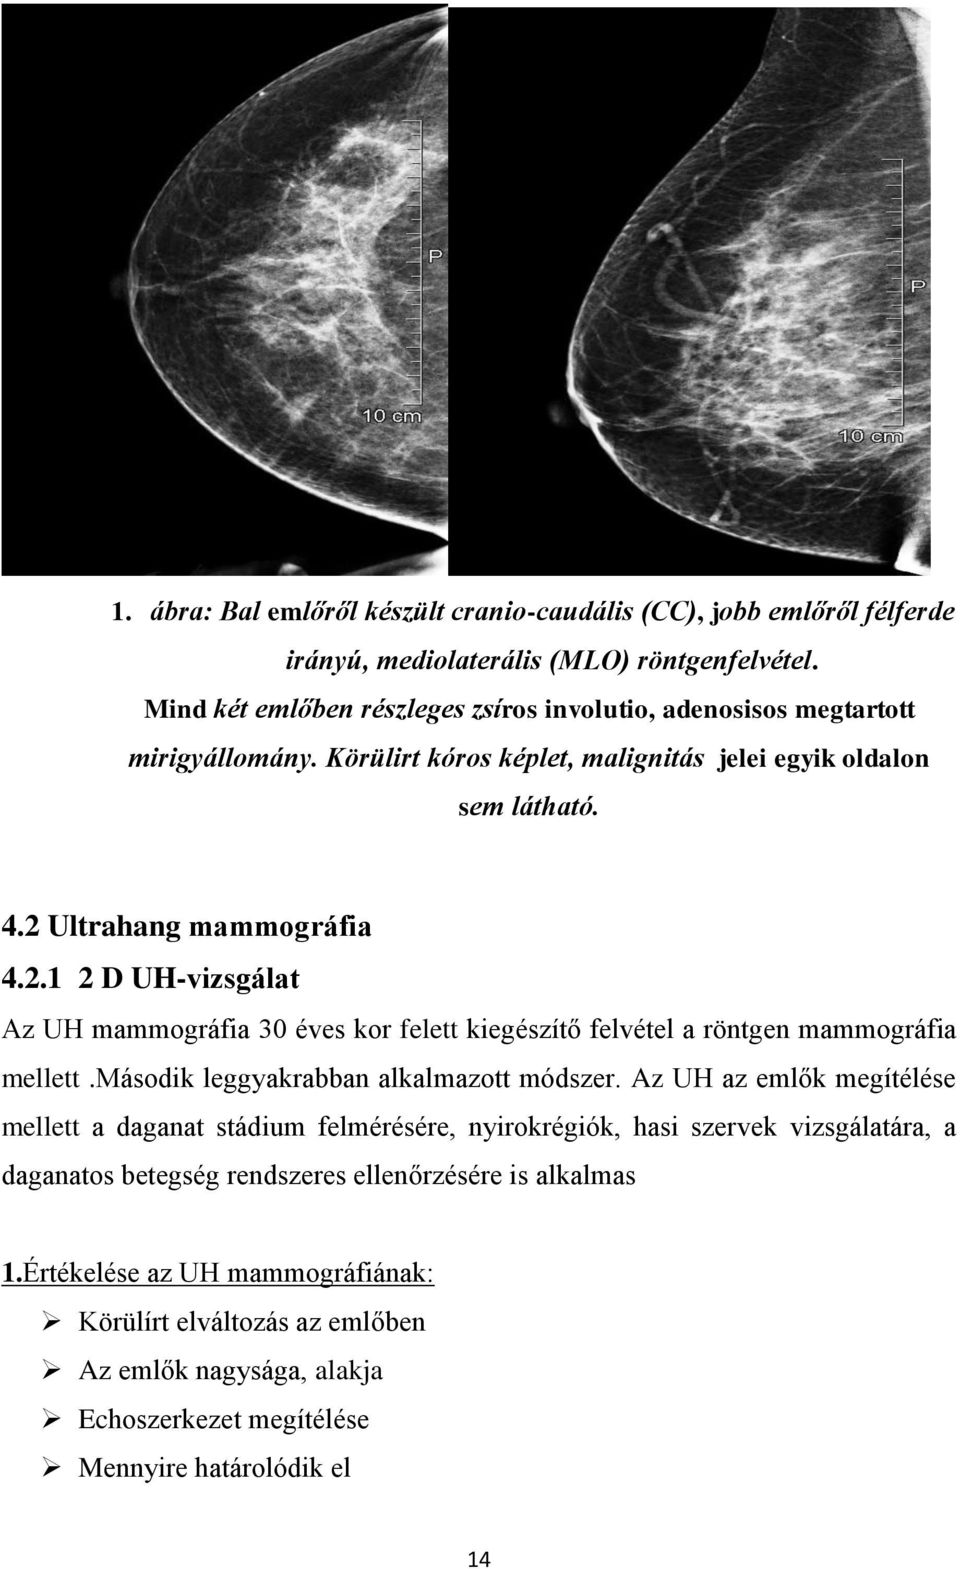 Ultrahang mammográfia 4.2.1 2 D UH-vizsgálat Az UH mammográfia 30 éves kor felett kiegészítő felvétel a röntgen mammográfia mellett.második leggyakrabban alkalmazott módszer.